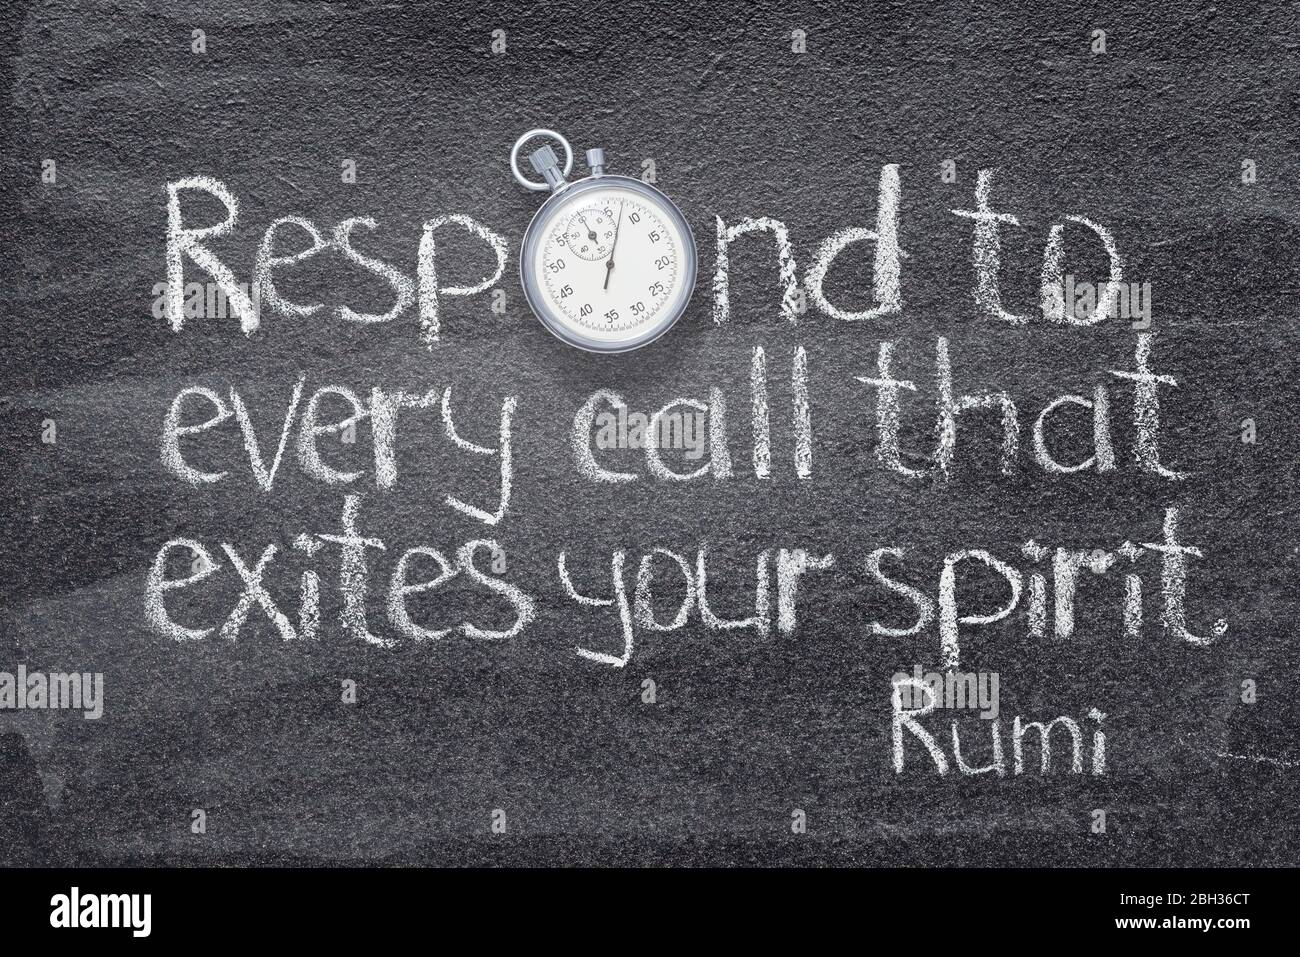 Rispondete ad ogni chiamata che eccita il vostro spirito - antico poeta persiano e filosofo Rumi citazione scritta su lavagna con cronometro vintage invece Foto Stock